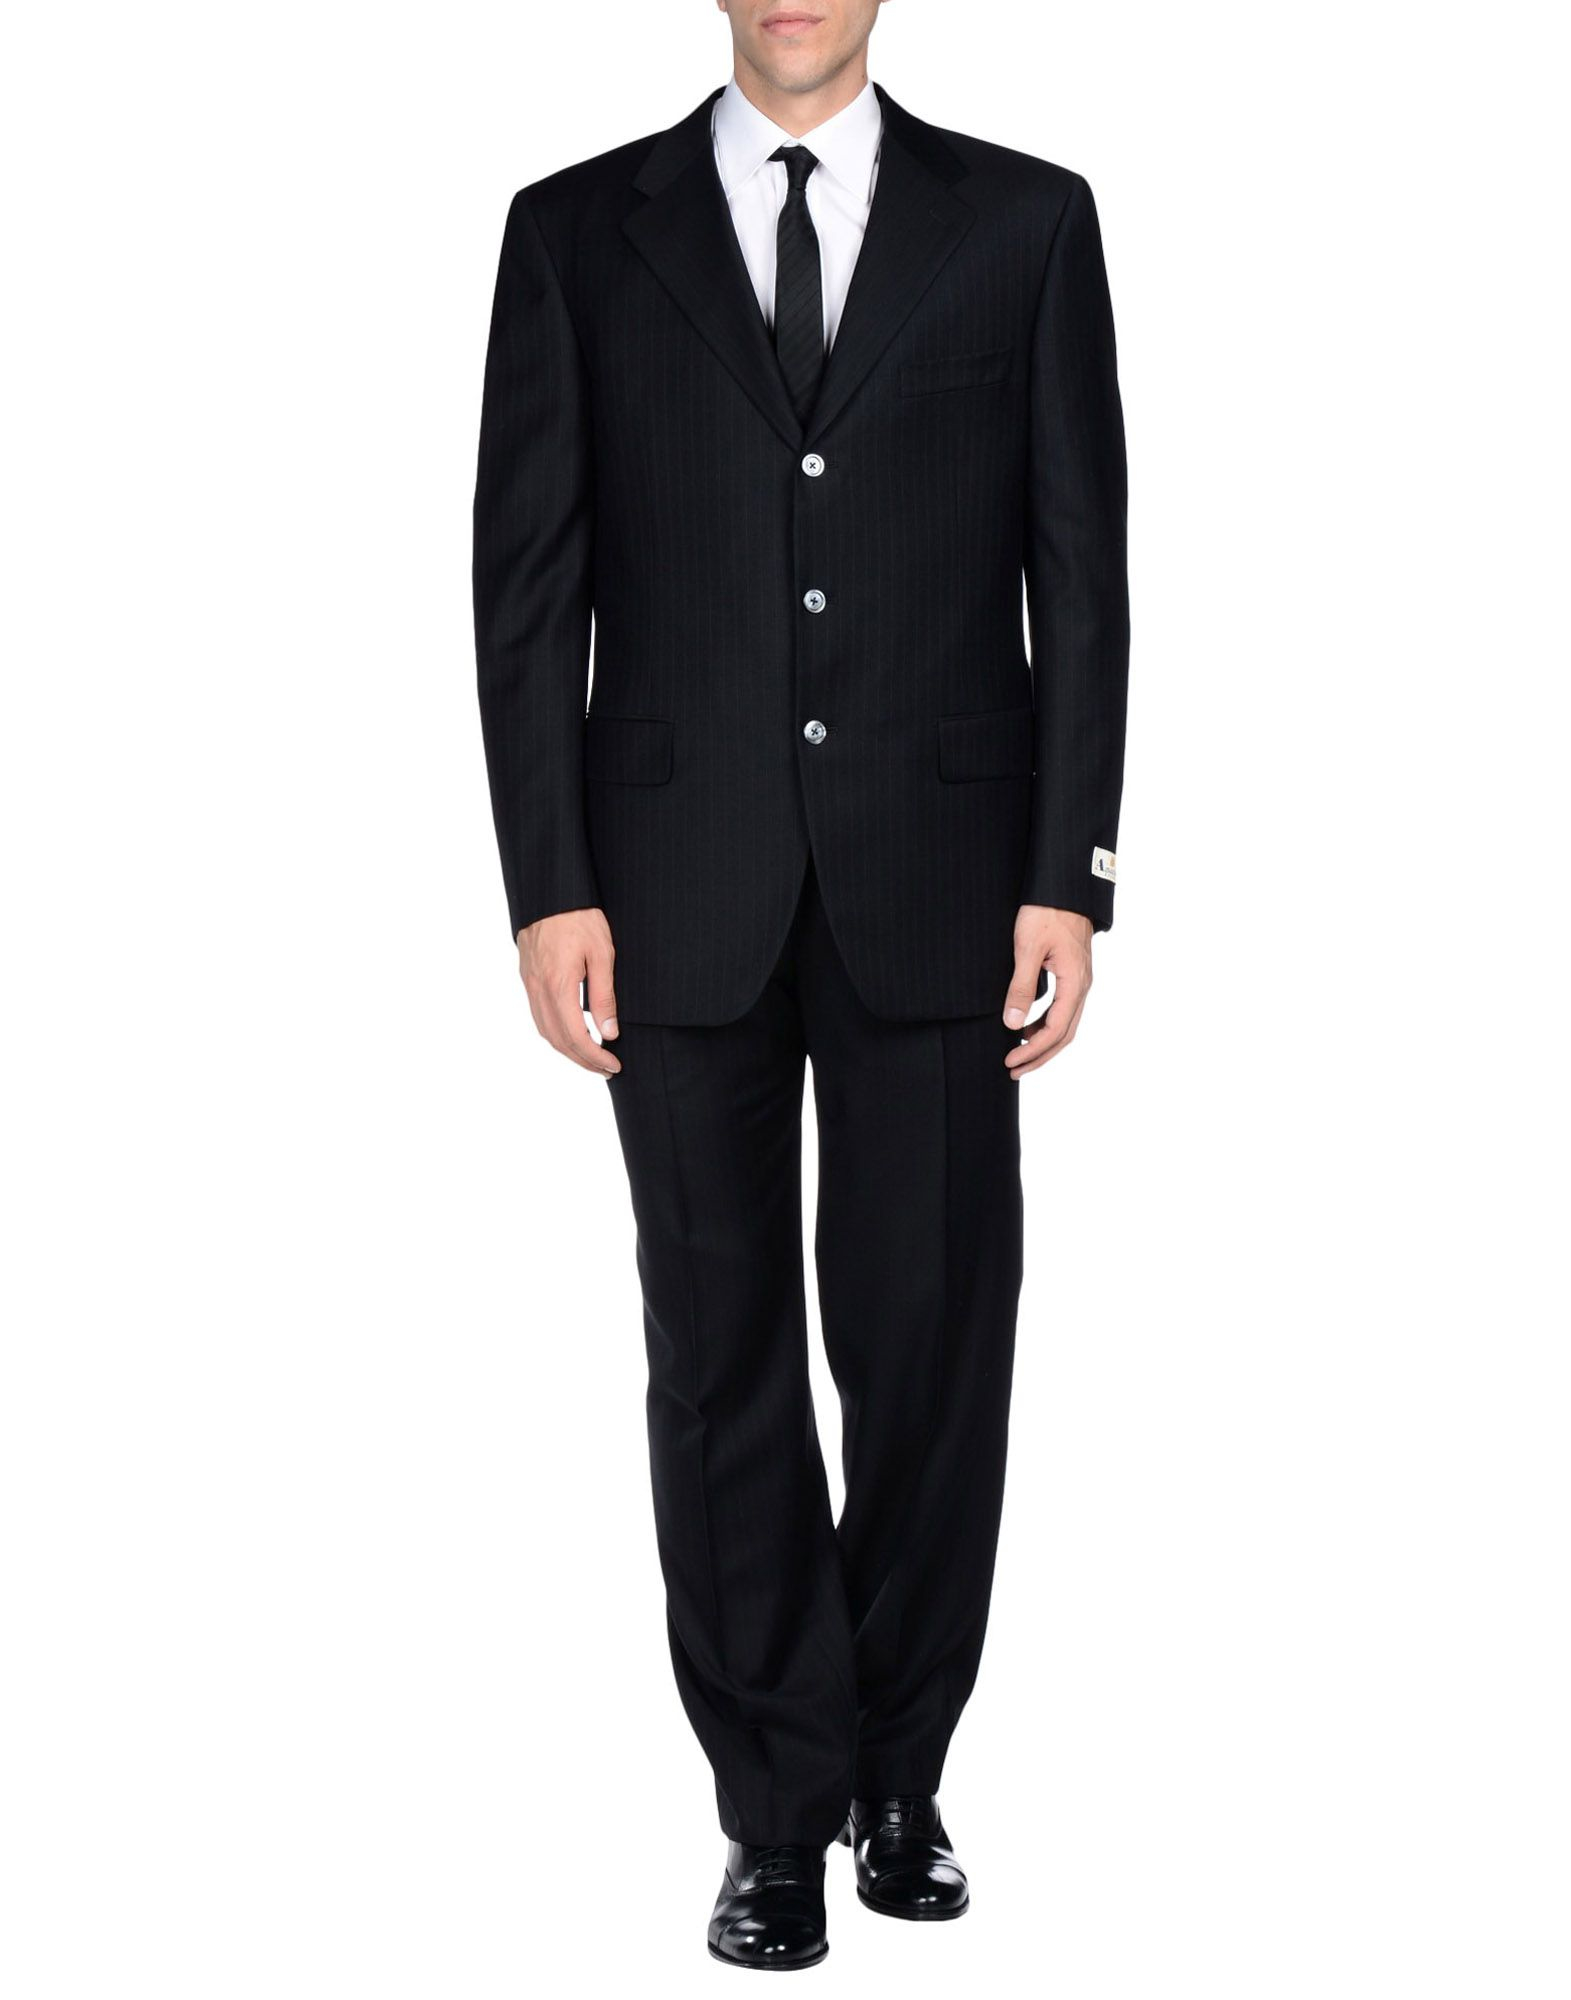 Lyst - Aquascutum Suit in Black for Men